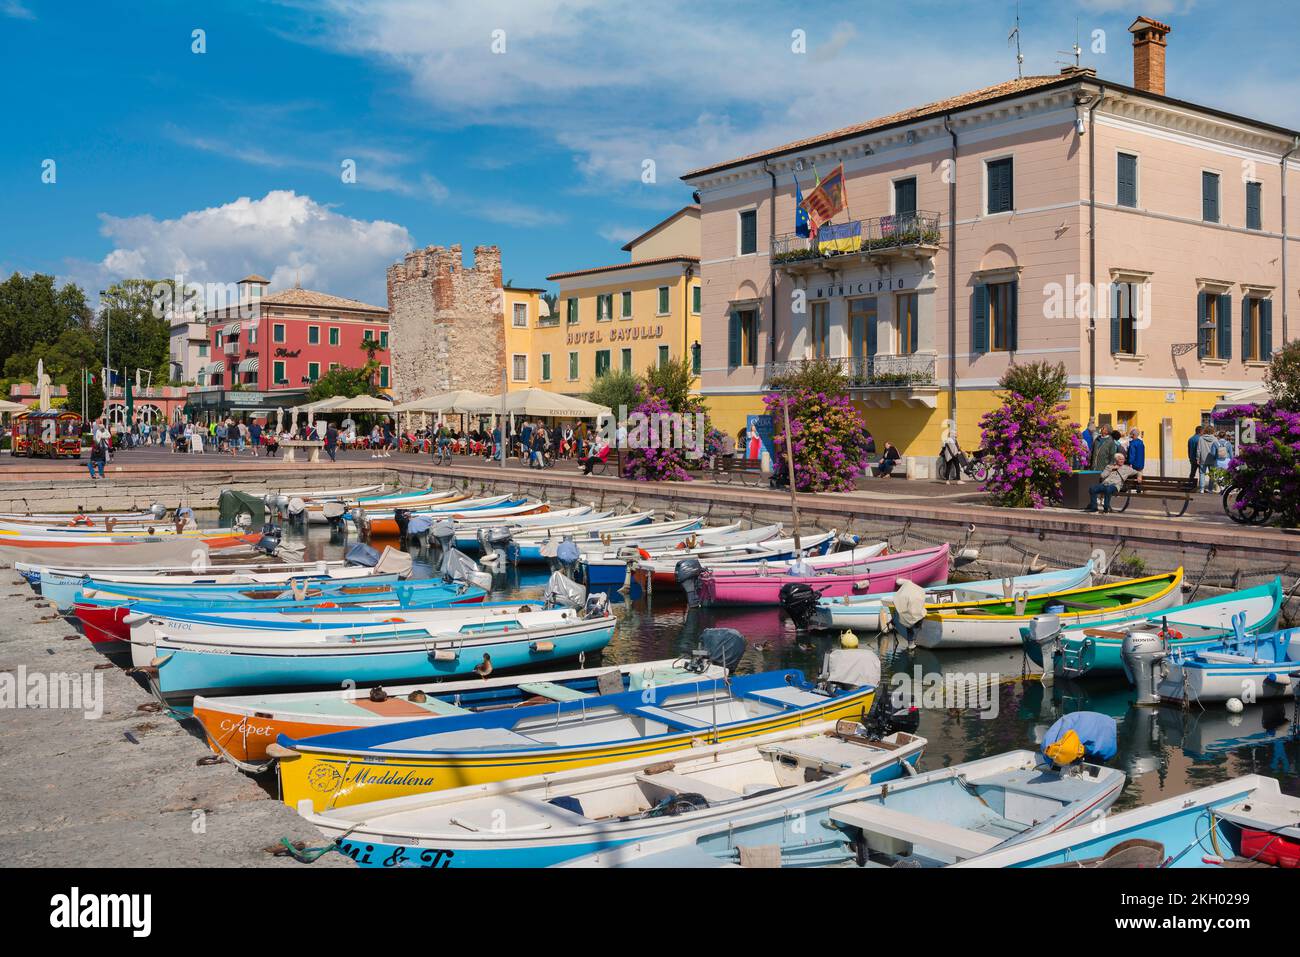 Bardolino Italia, vista en verano de la colorida zona del puerto junto al lago - el Lungolago Francesco Lenotti - en Bardolino, Lago Garda, Veneto, Italia Foto de stock